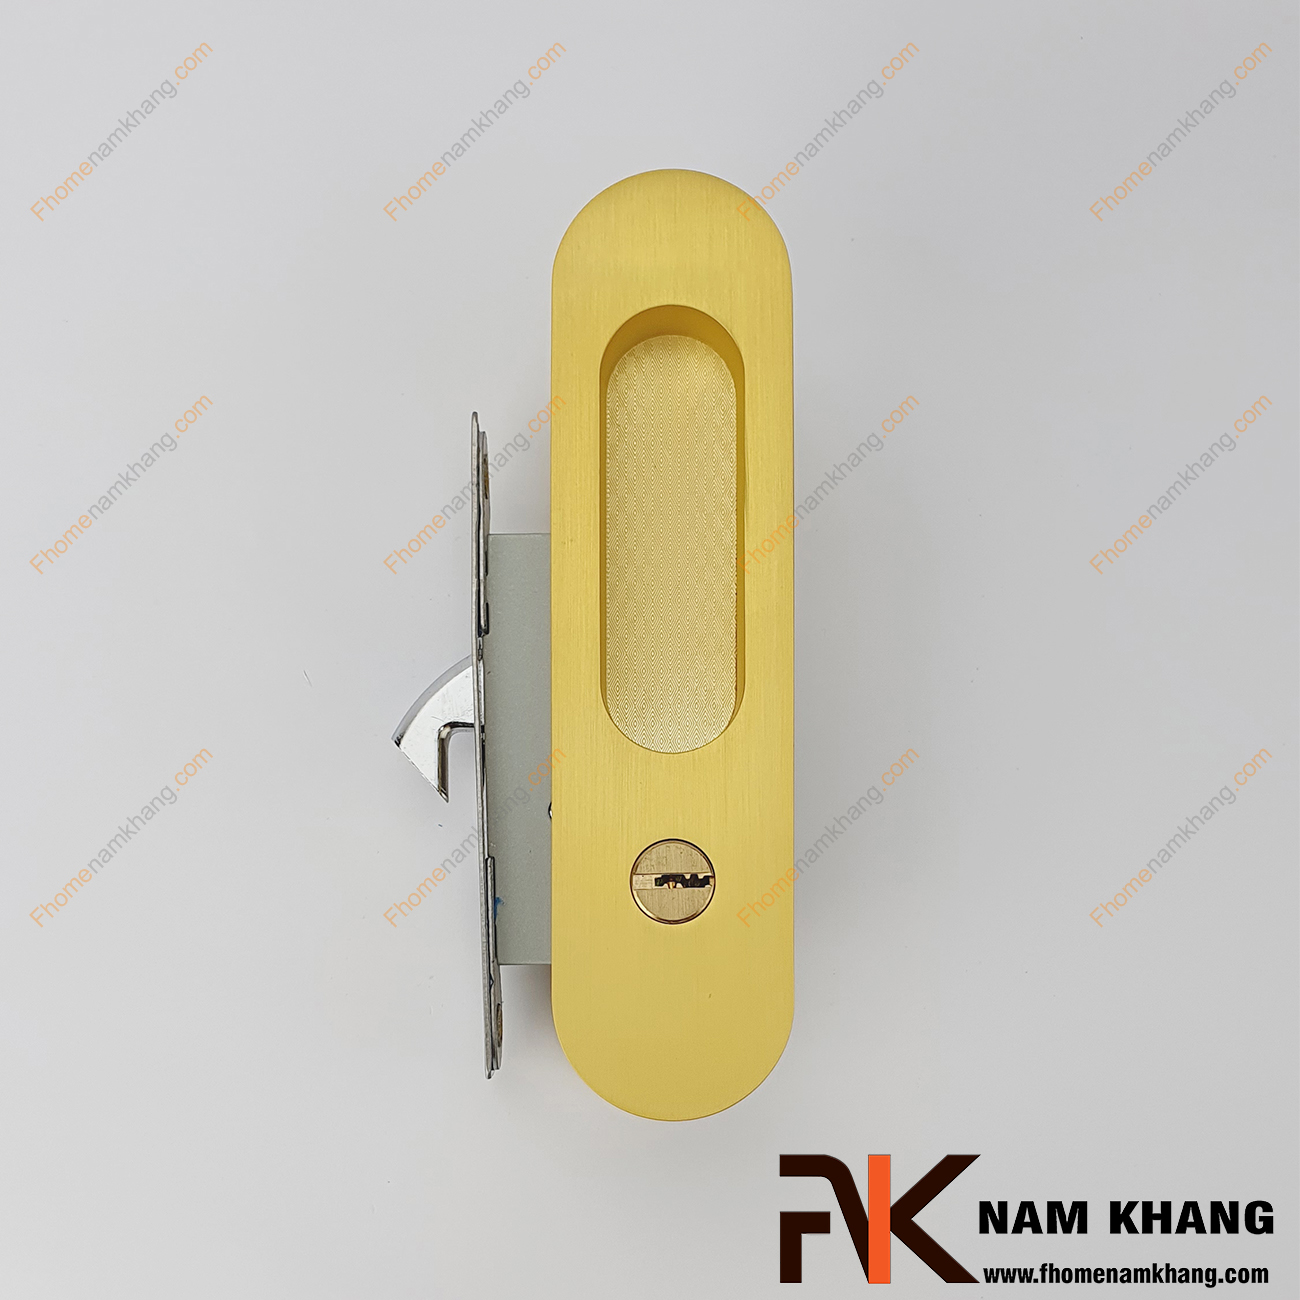 Khóa âm cửa lùa cao cấp màu đồng vàng mờ NK568H-VM được sự dụng phổ biến và là lựa chọn hàng đầu cho các công trình nhà ở, chung cư, biệt thự.